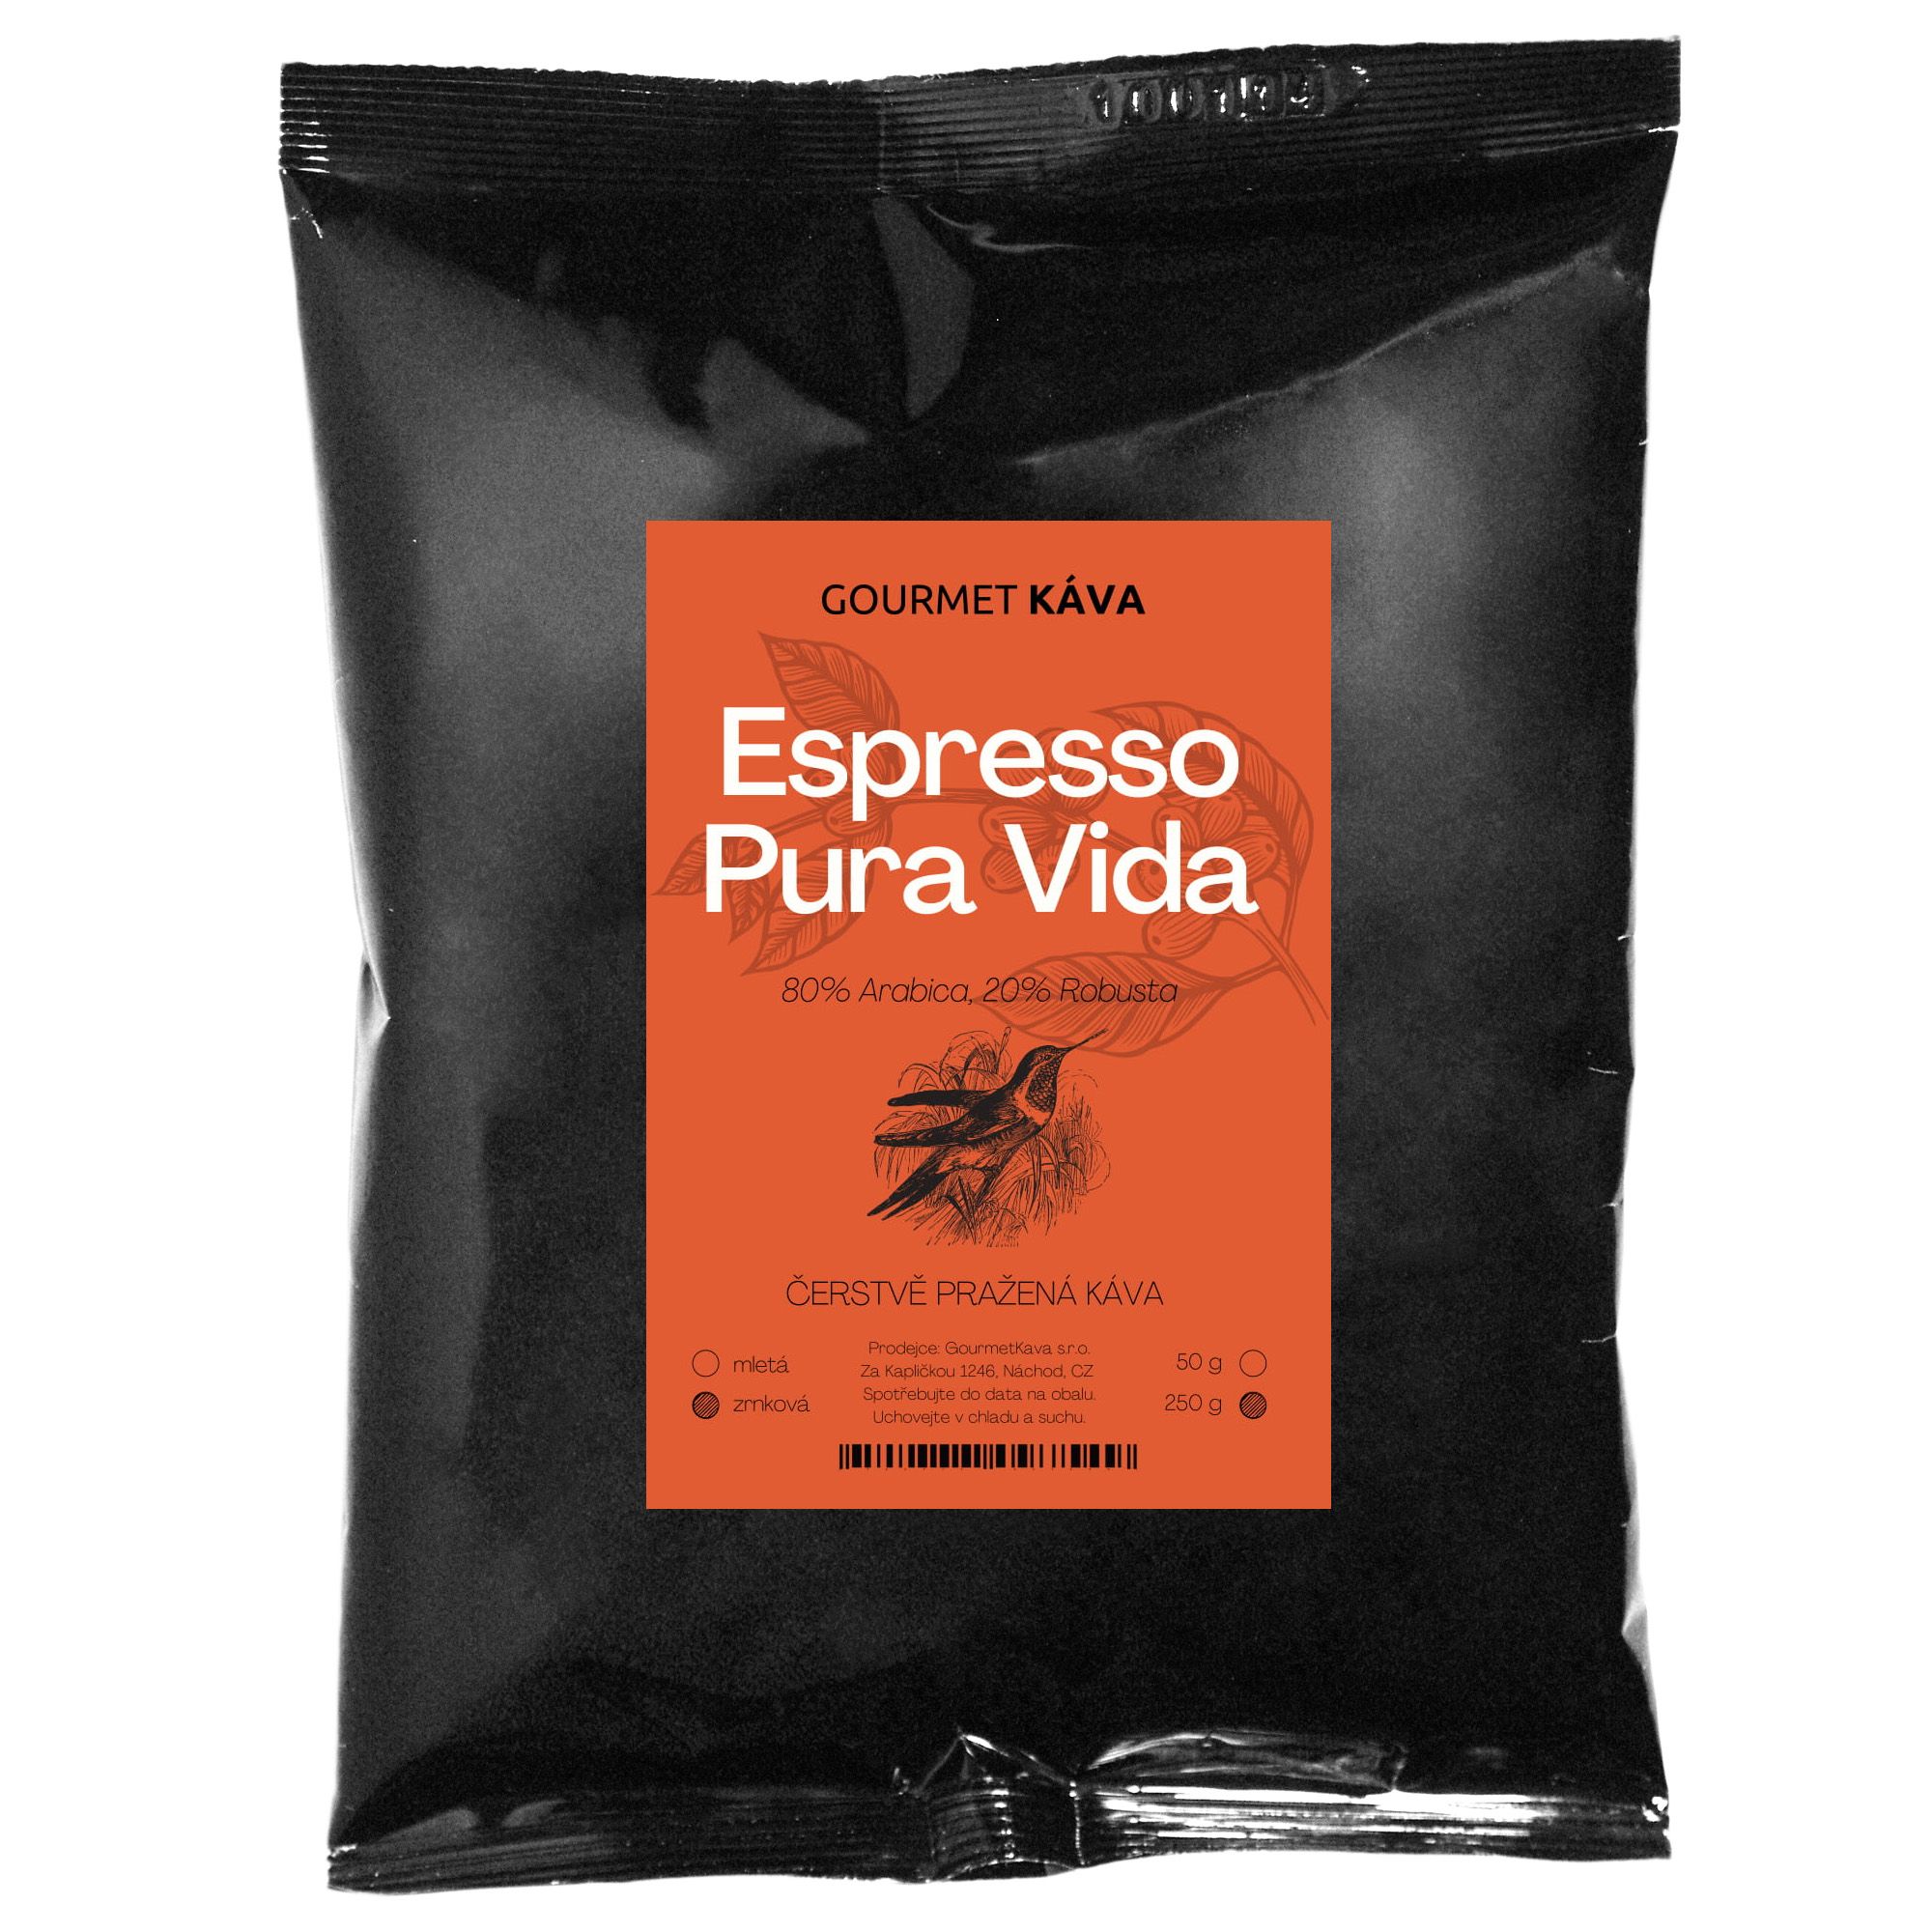 Káva Espresso Pura Vida 250g,Espresso směs Pura Vida, zrnková káva